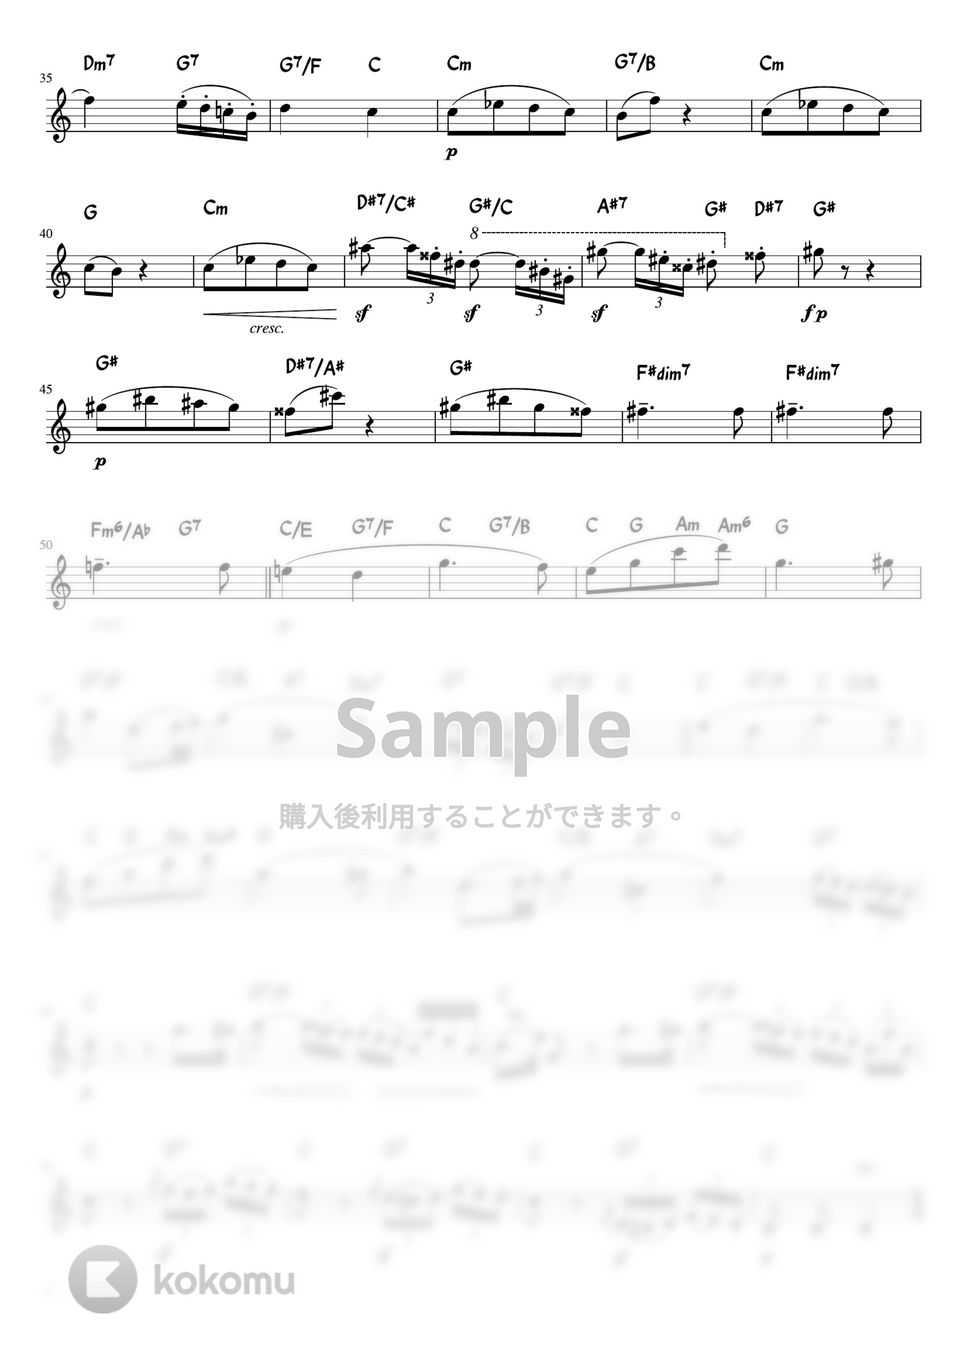 ベートーヴェン - 悲愴 (Cdur・メロディーコード) by pfkaori